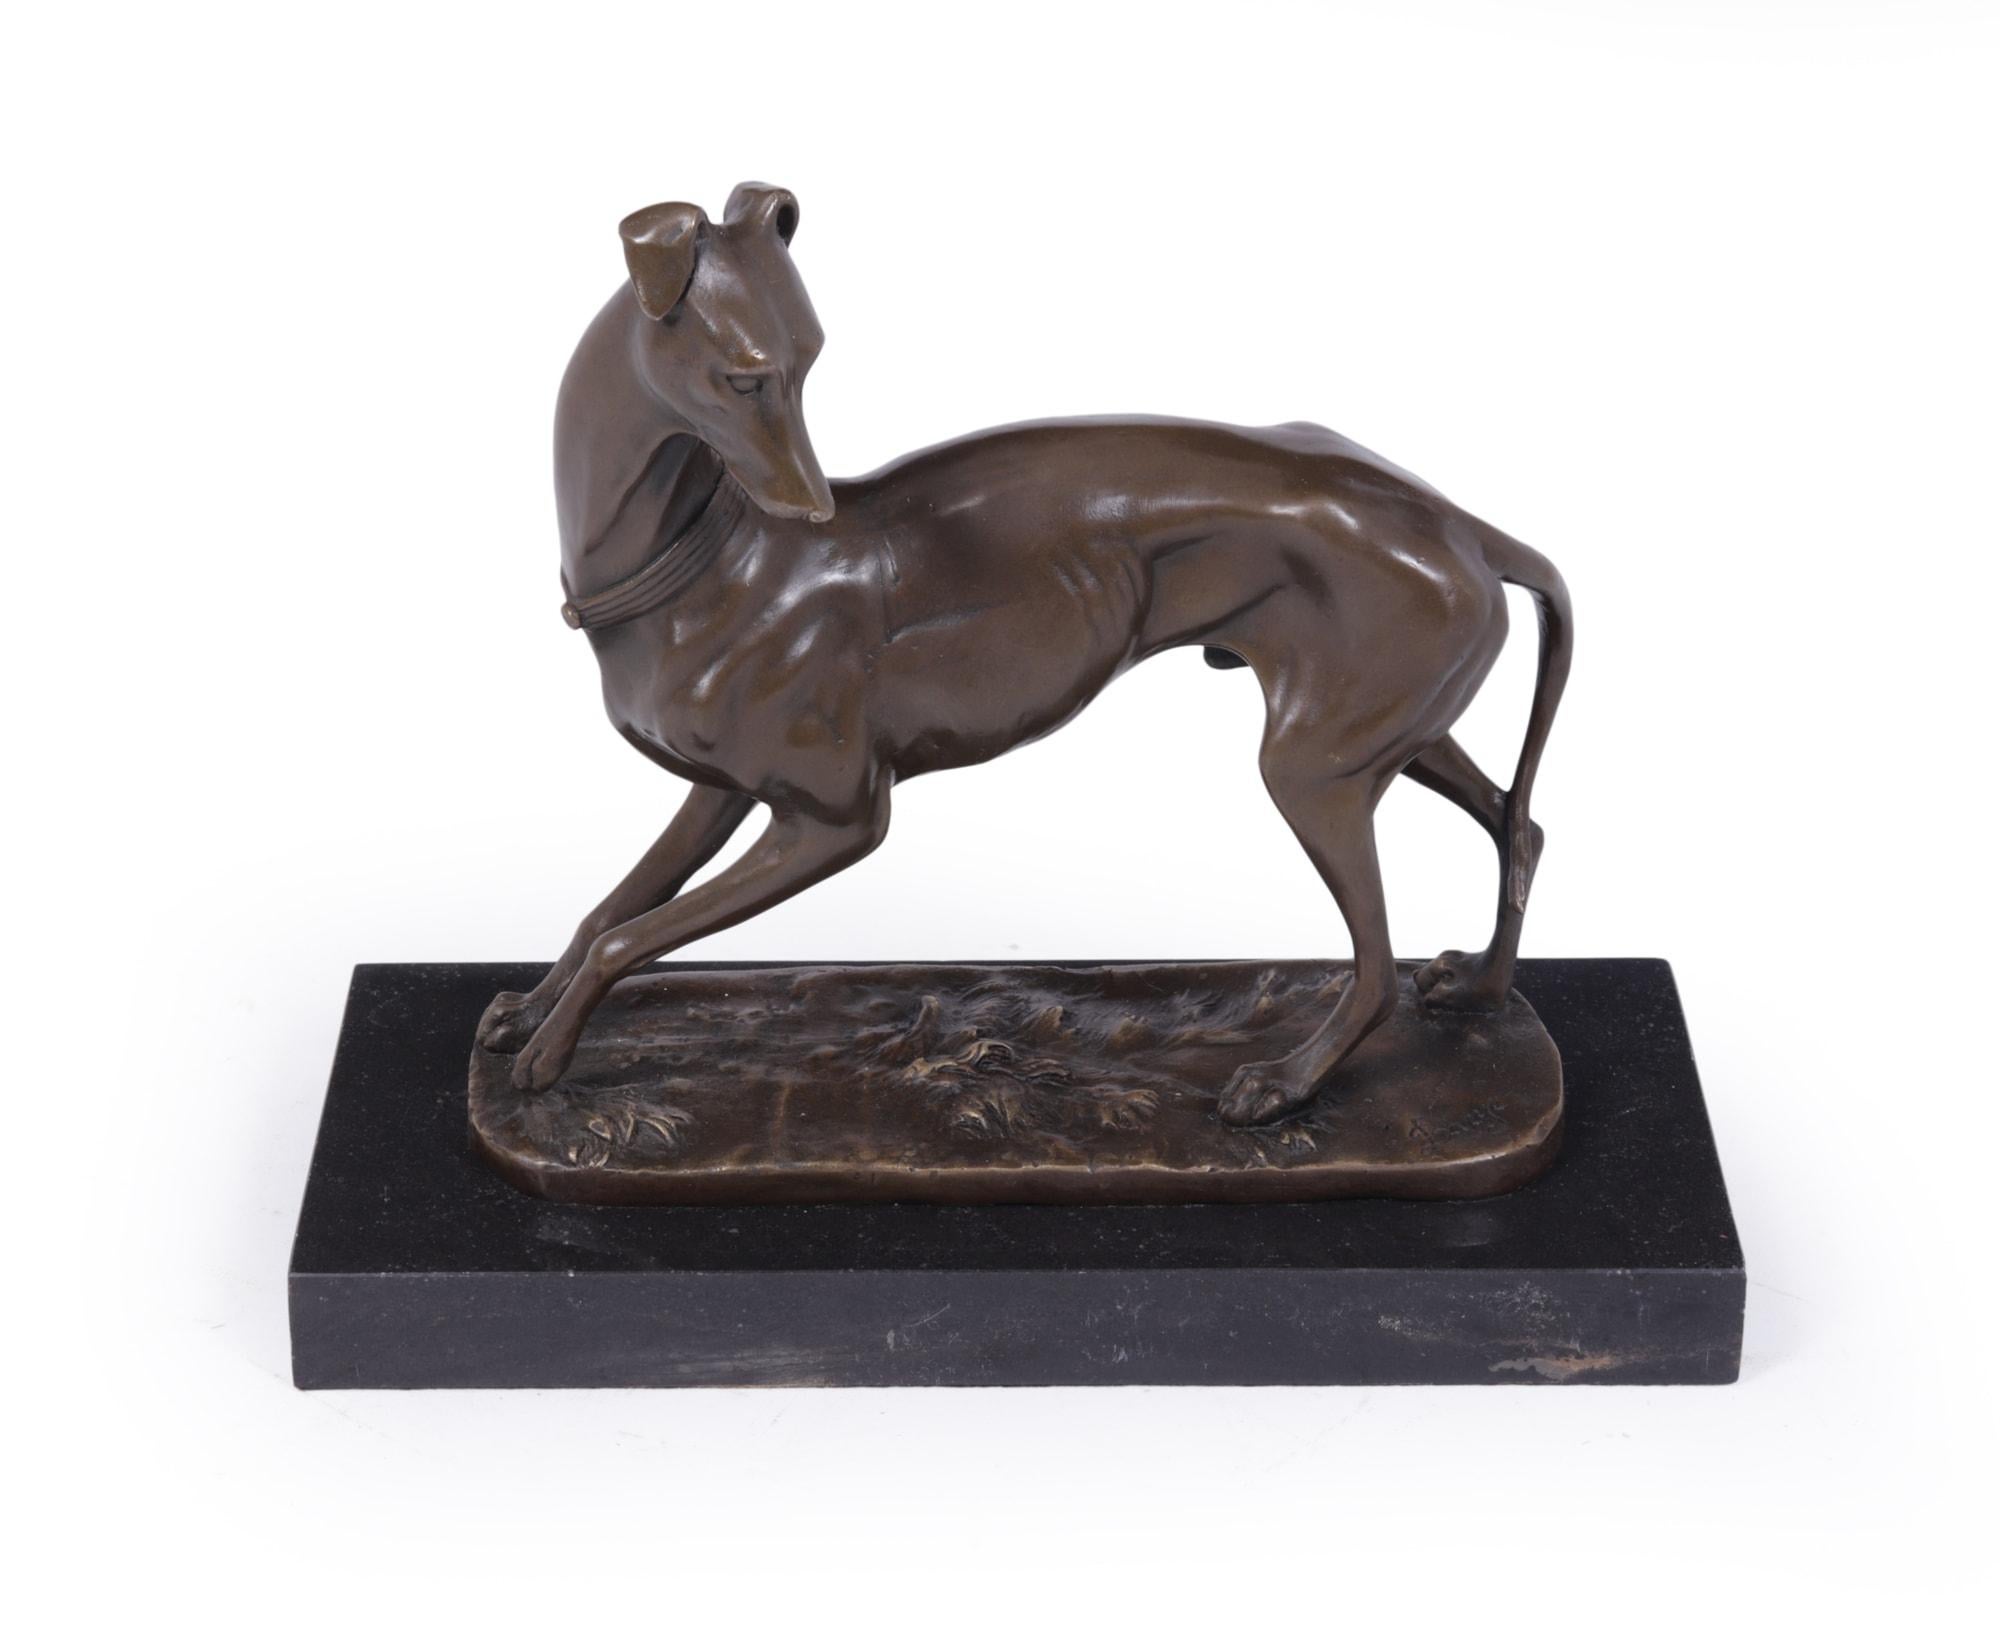 Art Deco Whippet Skulptur aus Bronze von Bayre
Antoine-Louis Bayre ( 1795- 1875 ) Der Whippet, diese Bronze wurde um 1880 gegossen und signiert Bayre montiert auf schwarzem Marmorsockel, große Qualität Guss, große Farbe und Patina auf Bronze. Bayre